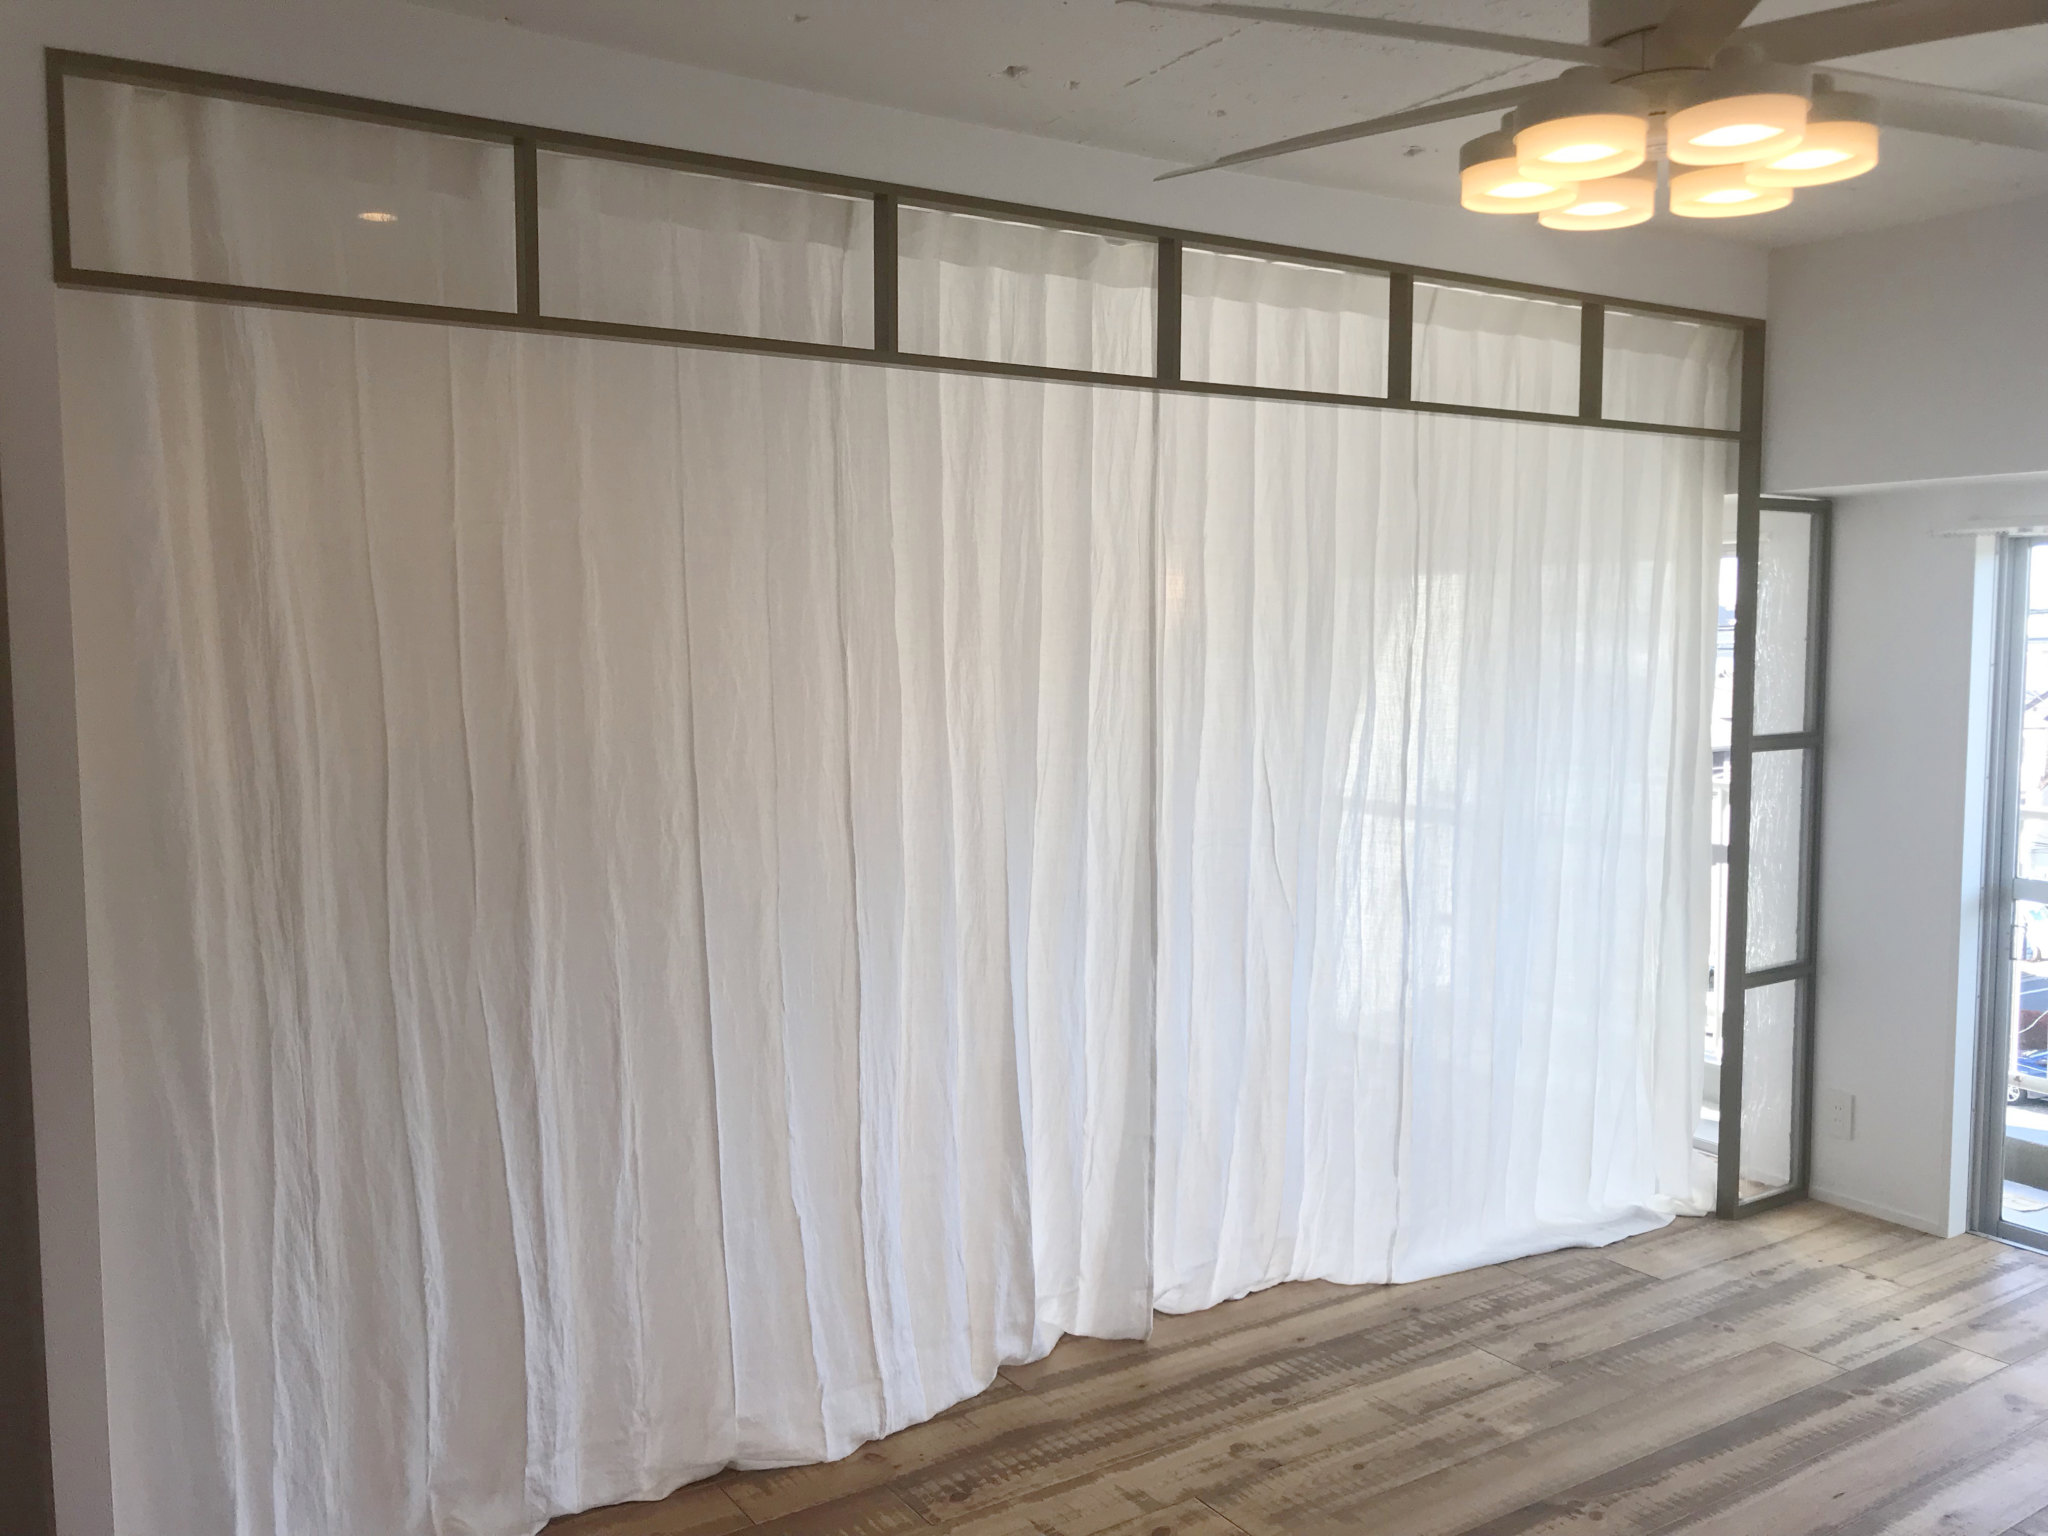 東京都新宿区 リノベーション空間と相性のいいリネンカーテン リネンカーテン トレジュール 麻や綿のオーダーカーテン